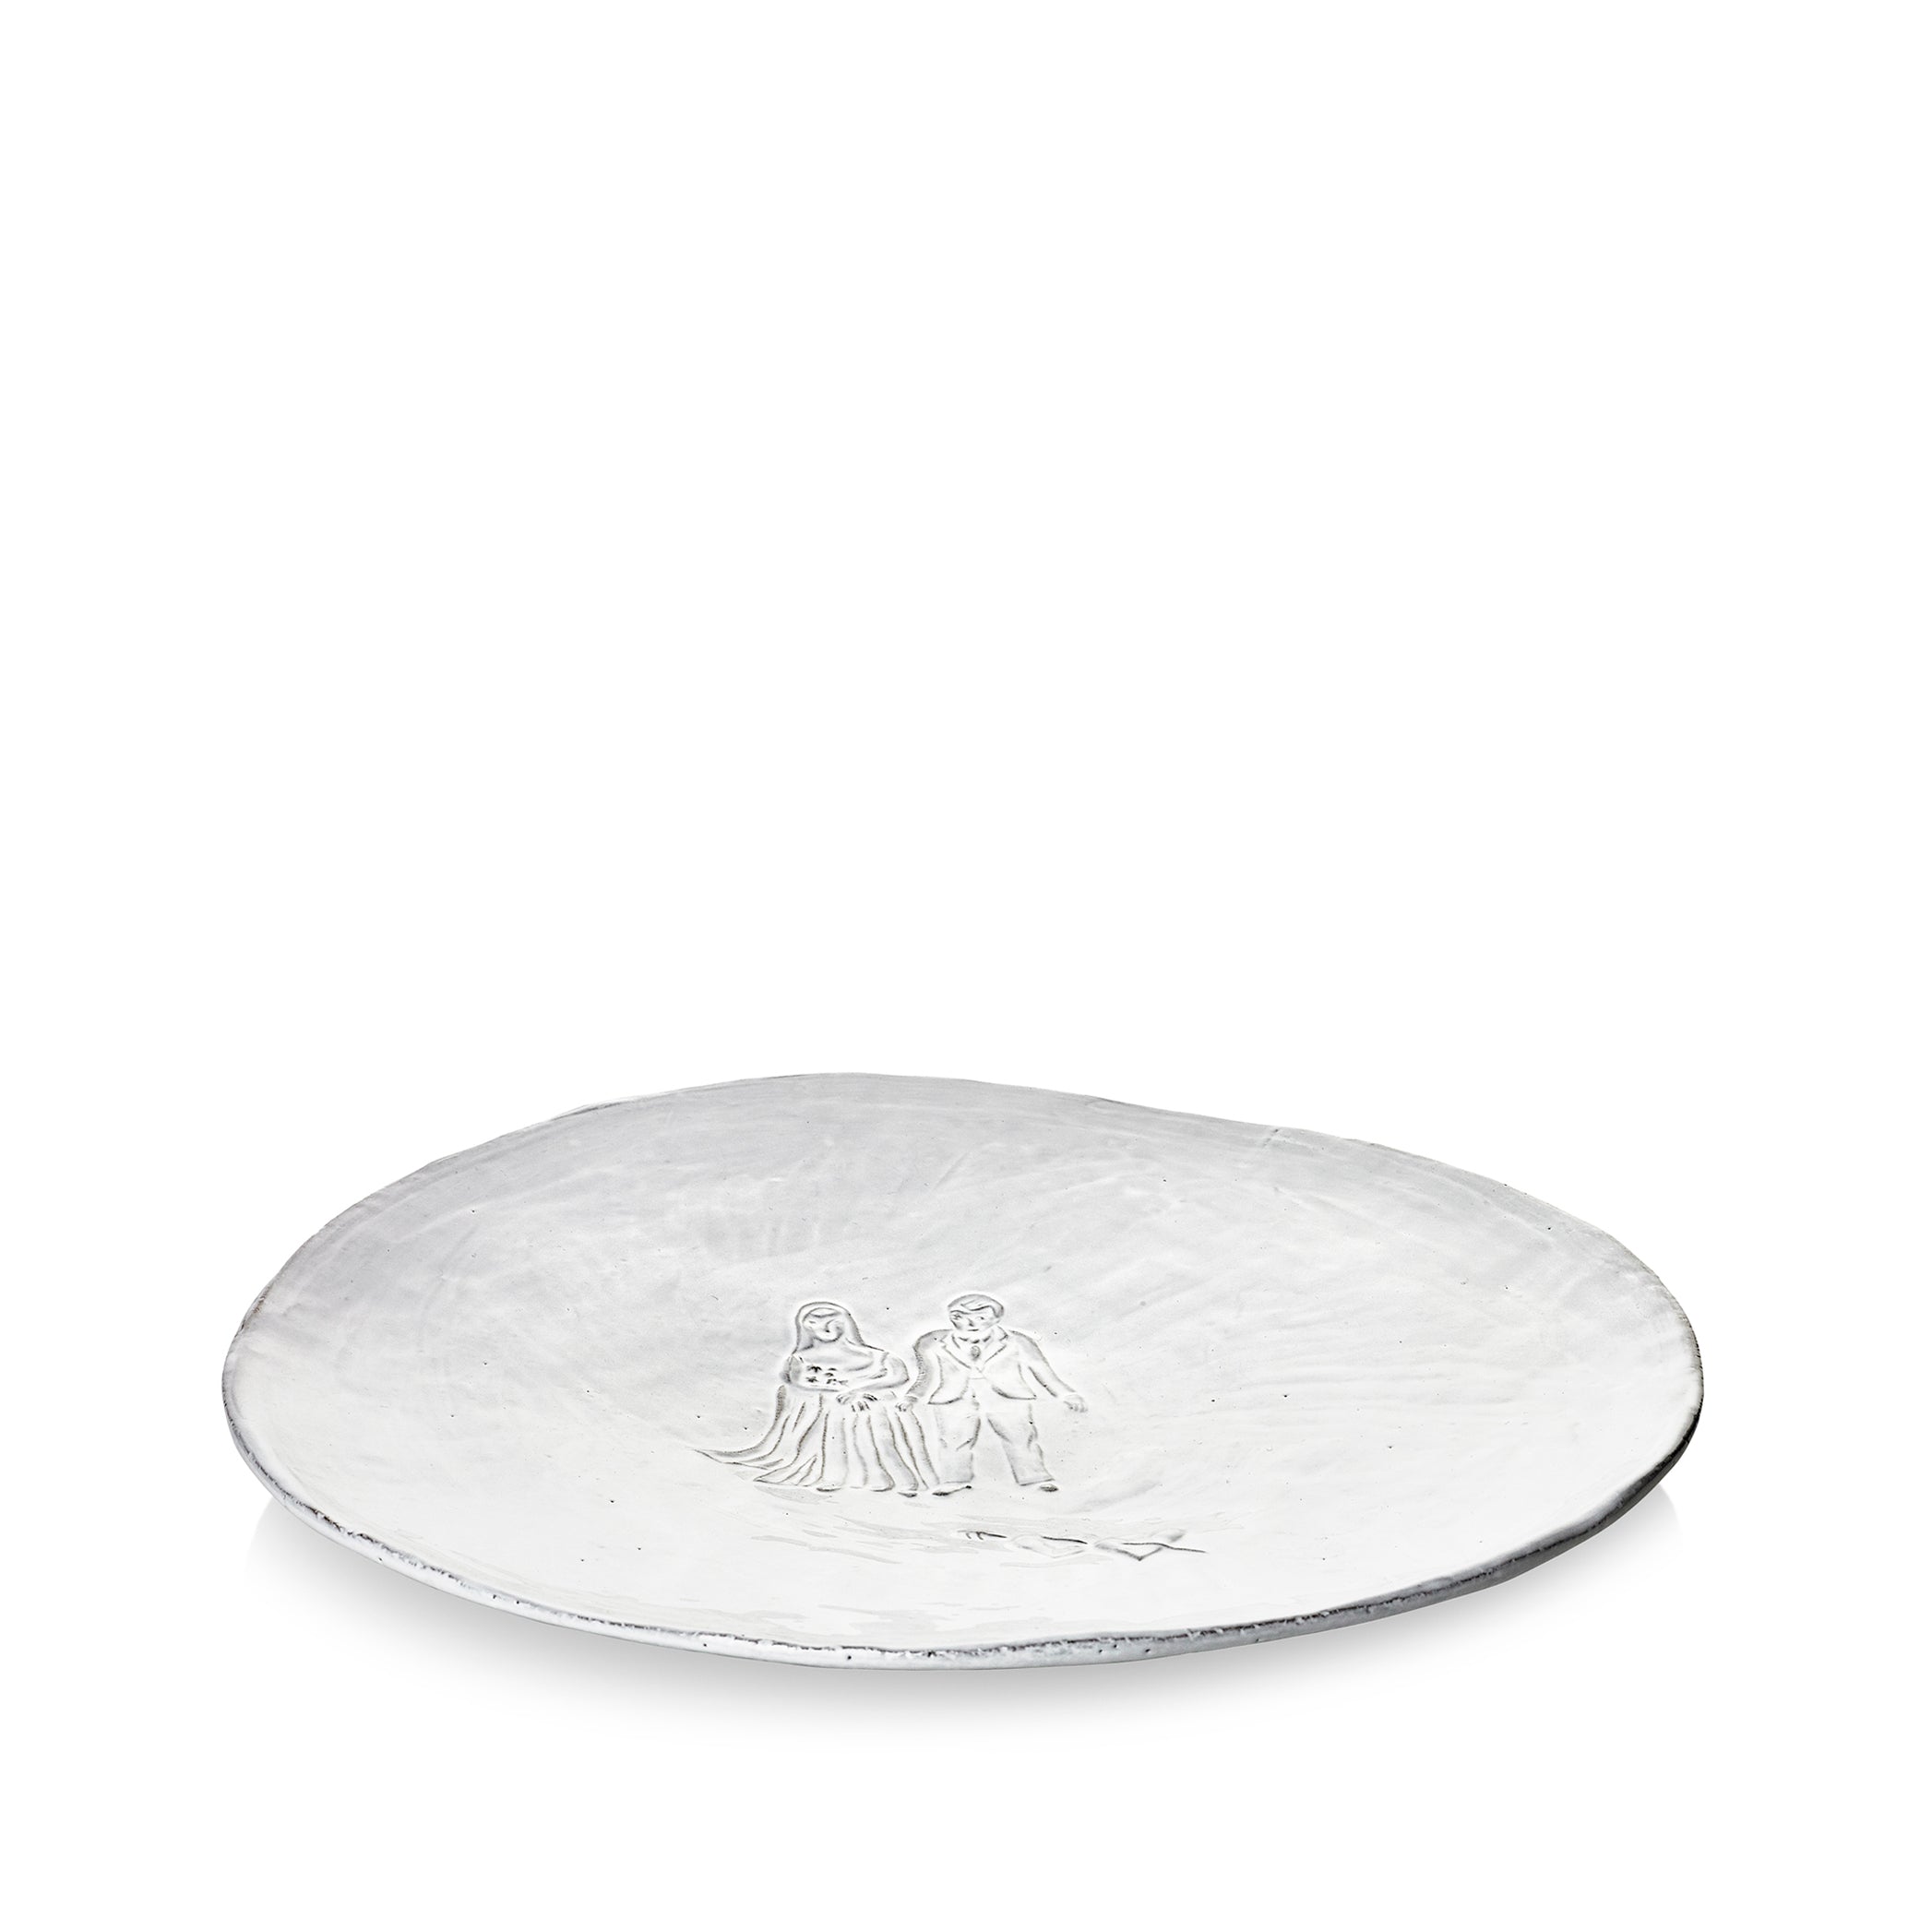 Mariés Wedding Platter by Astier de Villatte, 35.5cm